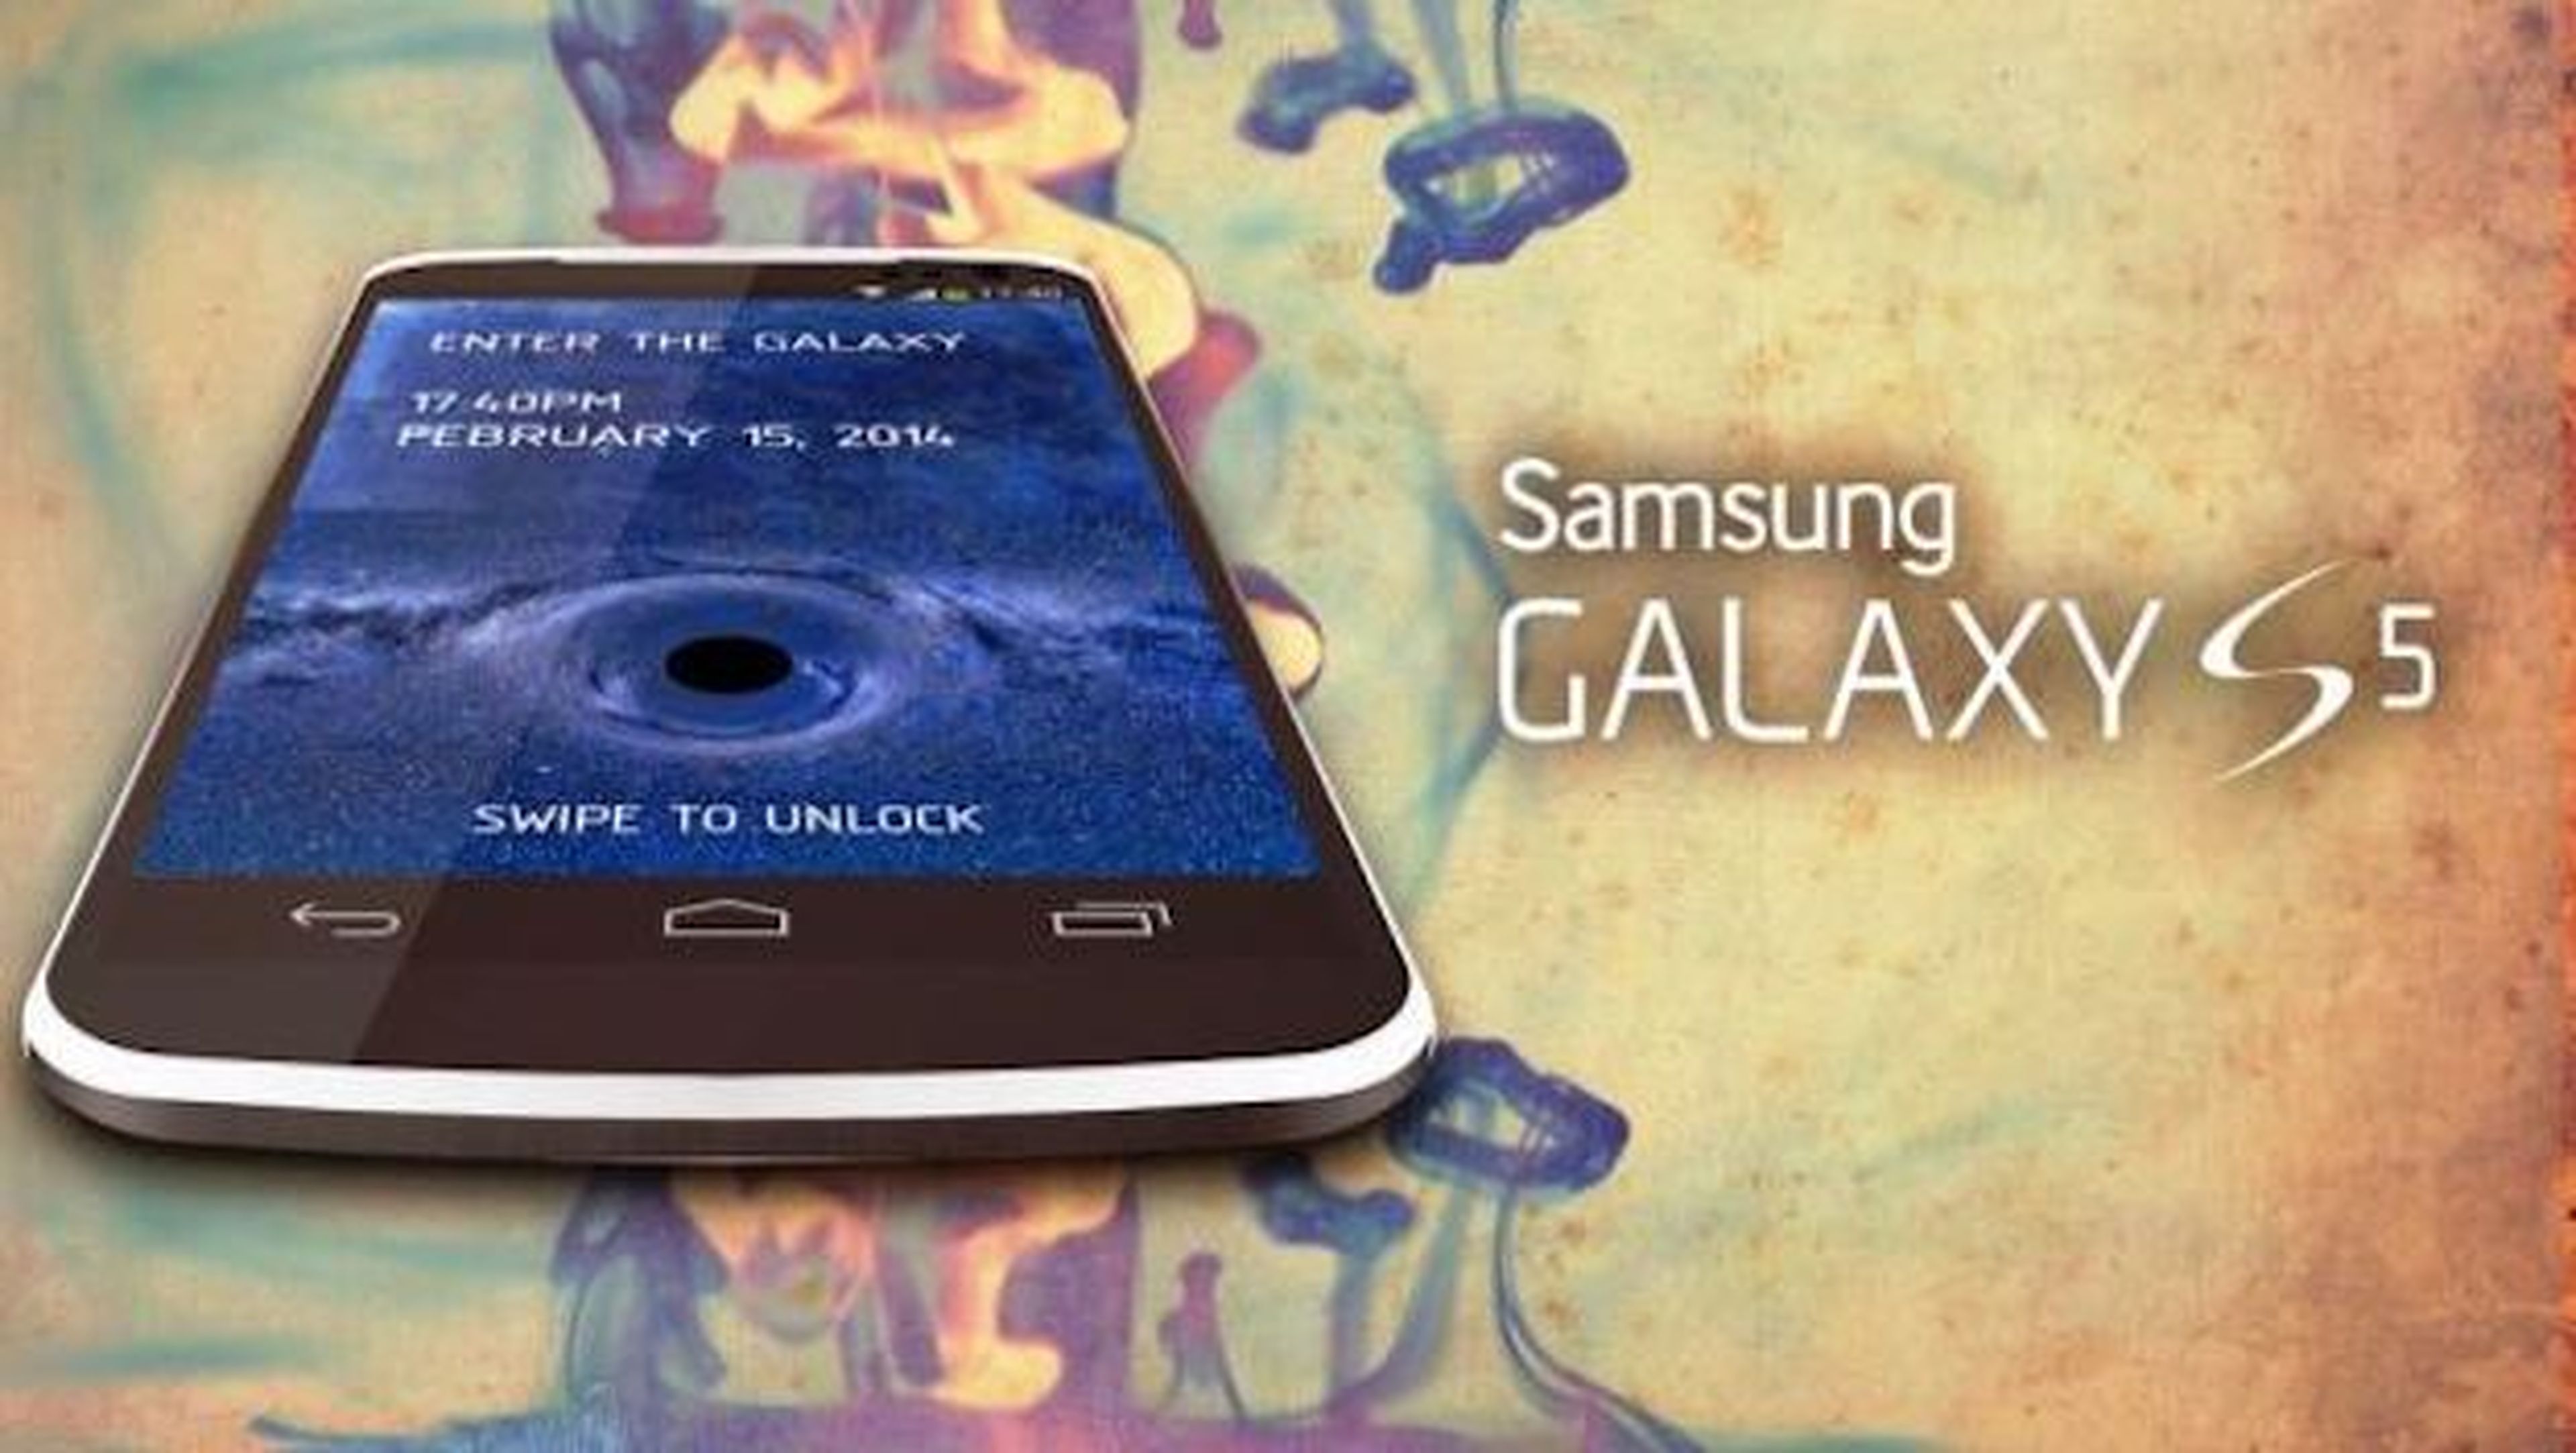 Samsung Galaxy S5, diseño concepto de Bob Freking